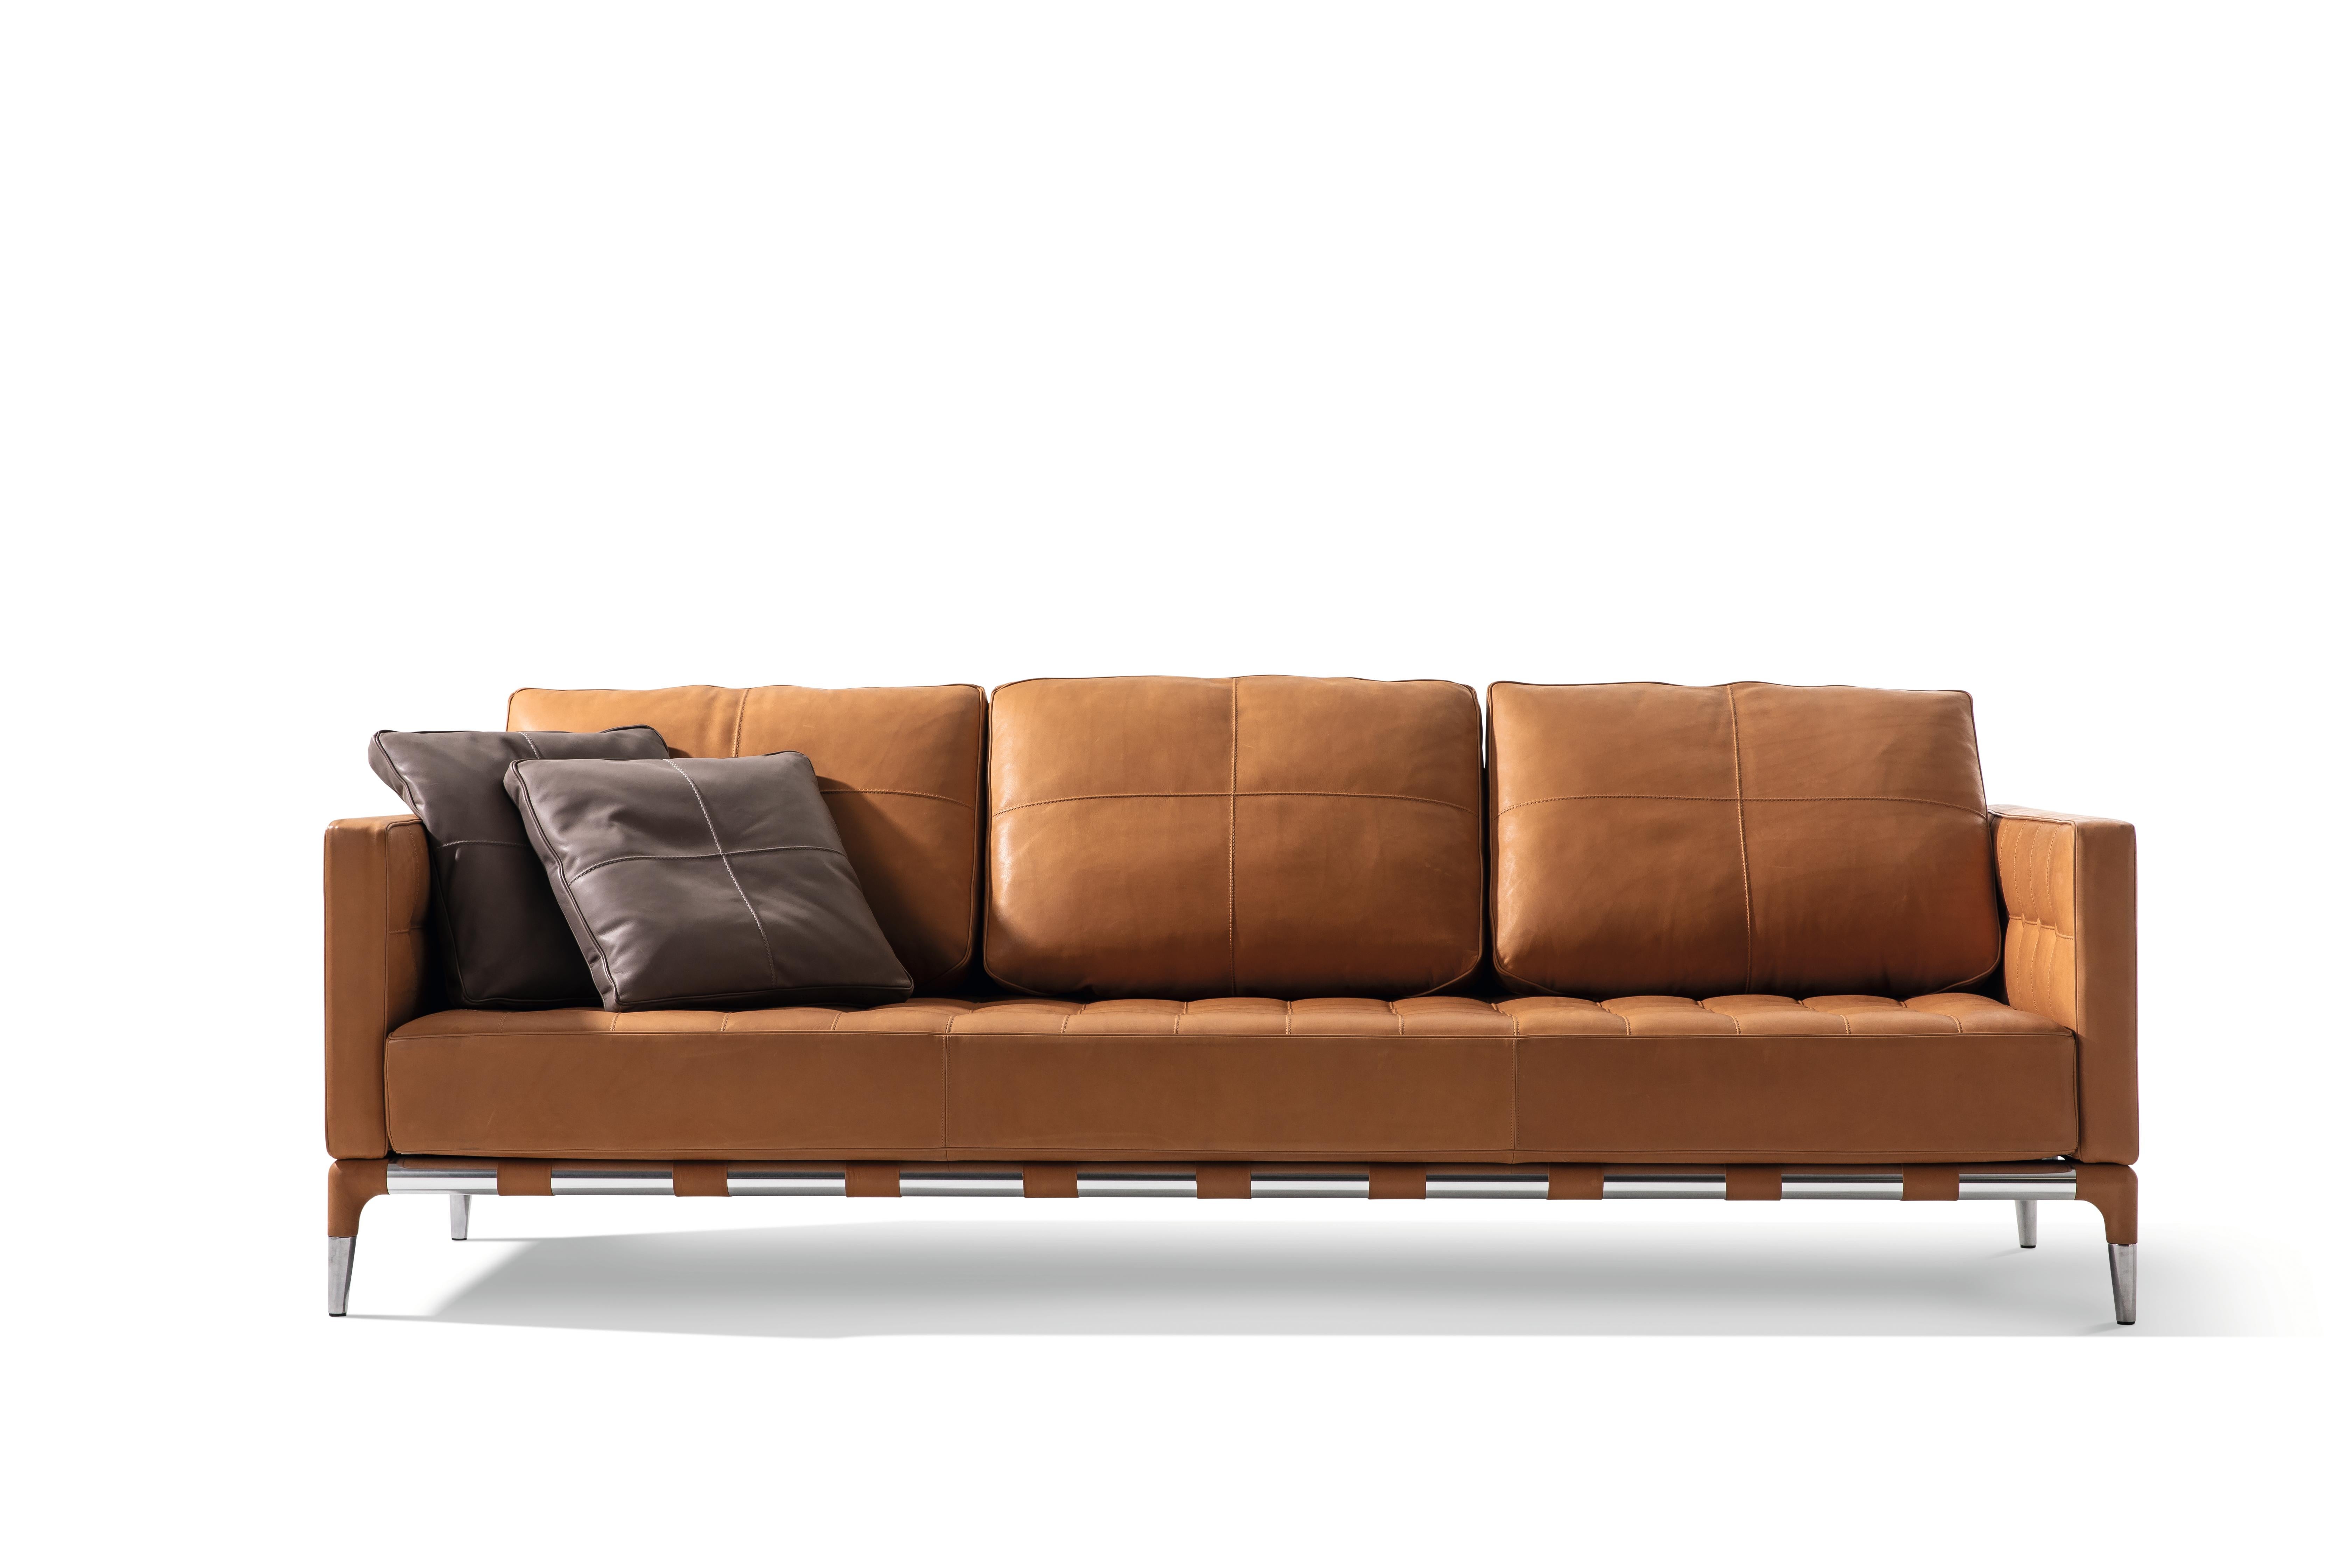 Sofa aus Stahl und Leder Modell 'Prive' entworfen von Phillipe Stark.
Hergestellt von Cassina (Italien)

Die Privé-Kollektion mit ihrem komplexen und formalen Design verbindet Stil und Überschreitung auf perfekte Weise und schafft eine ansprechende